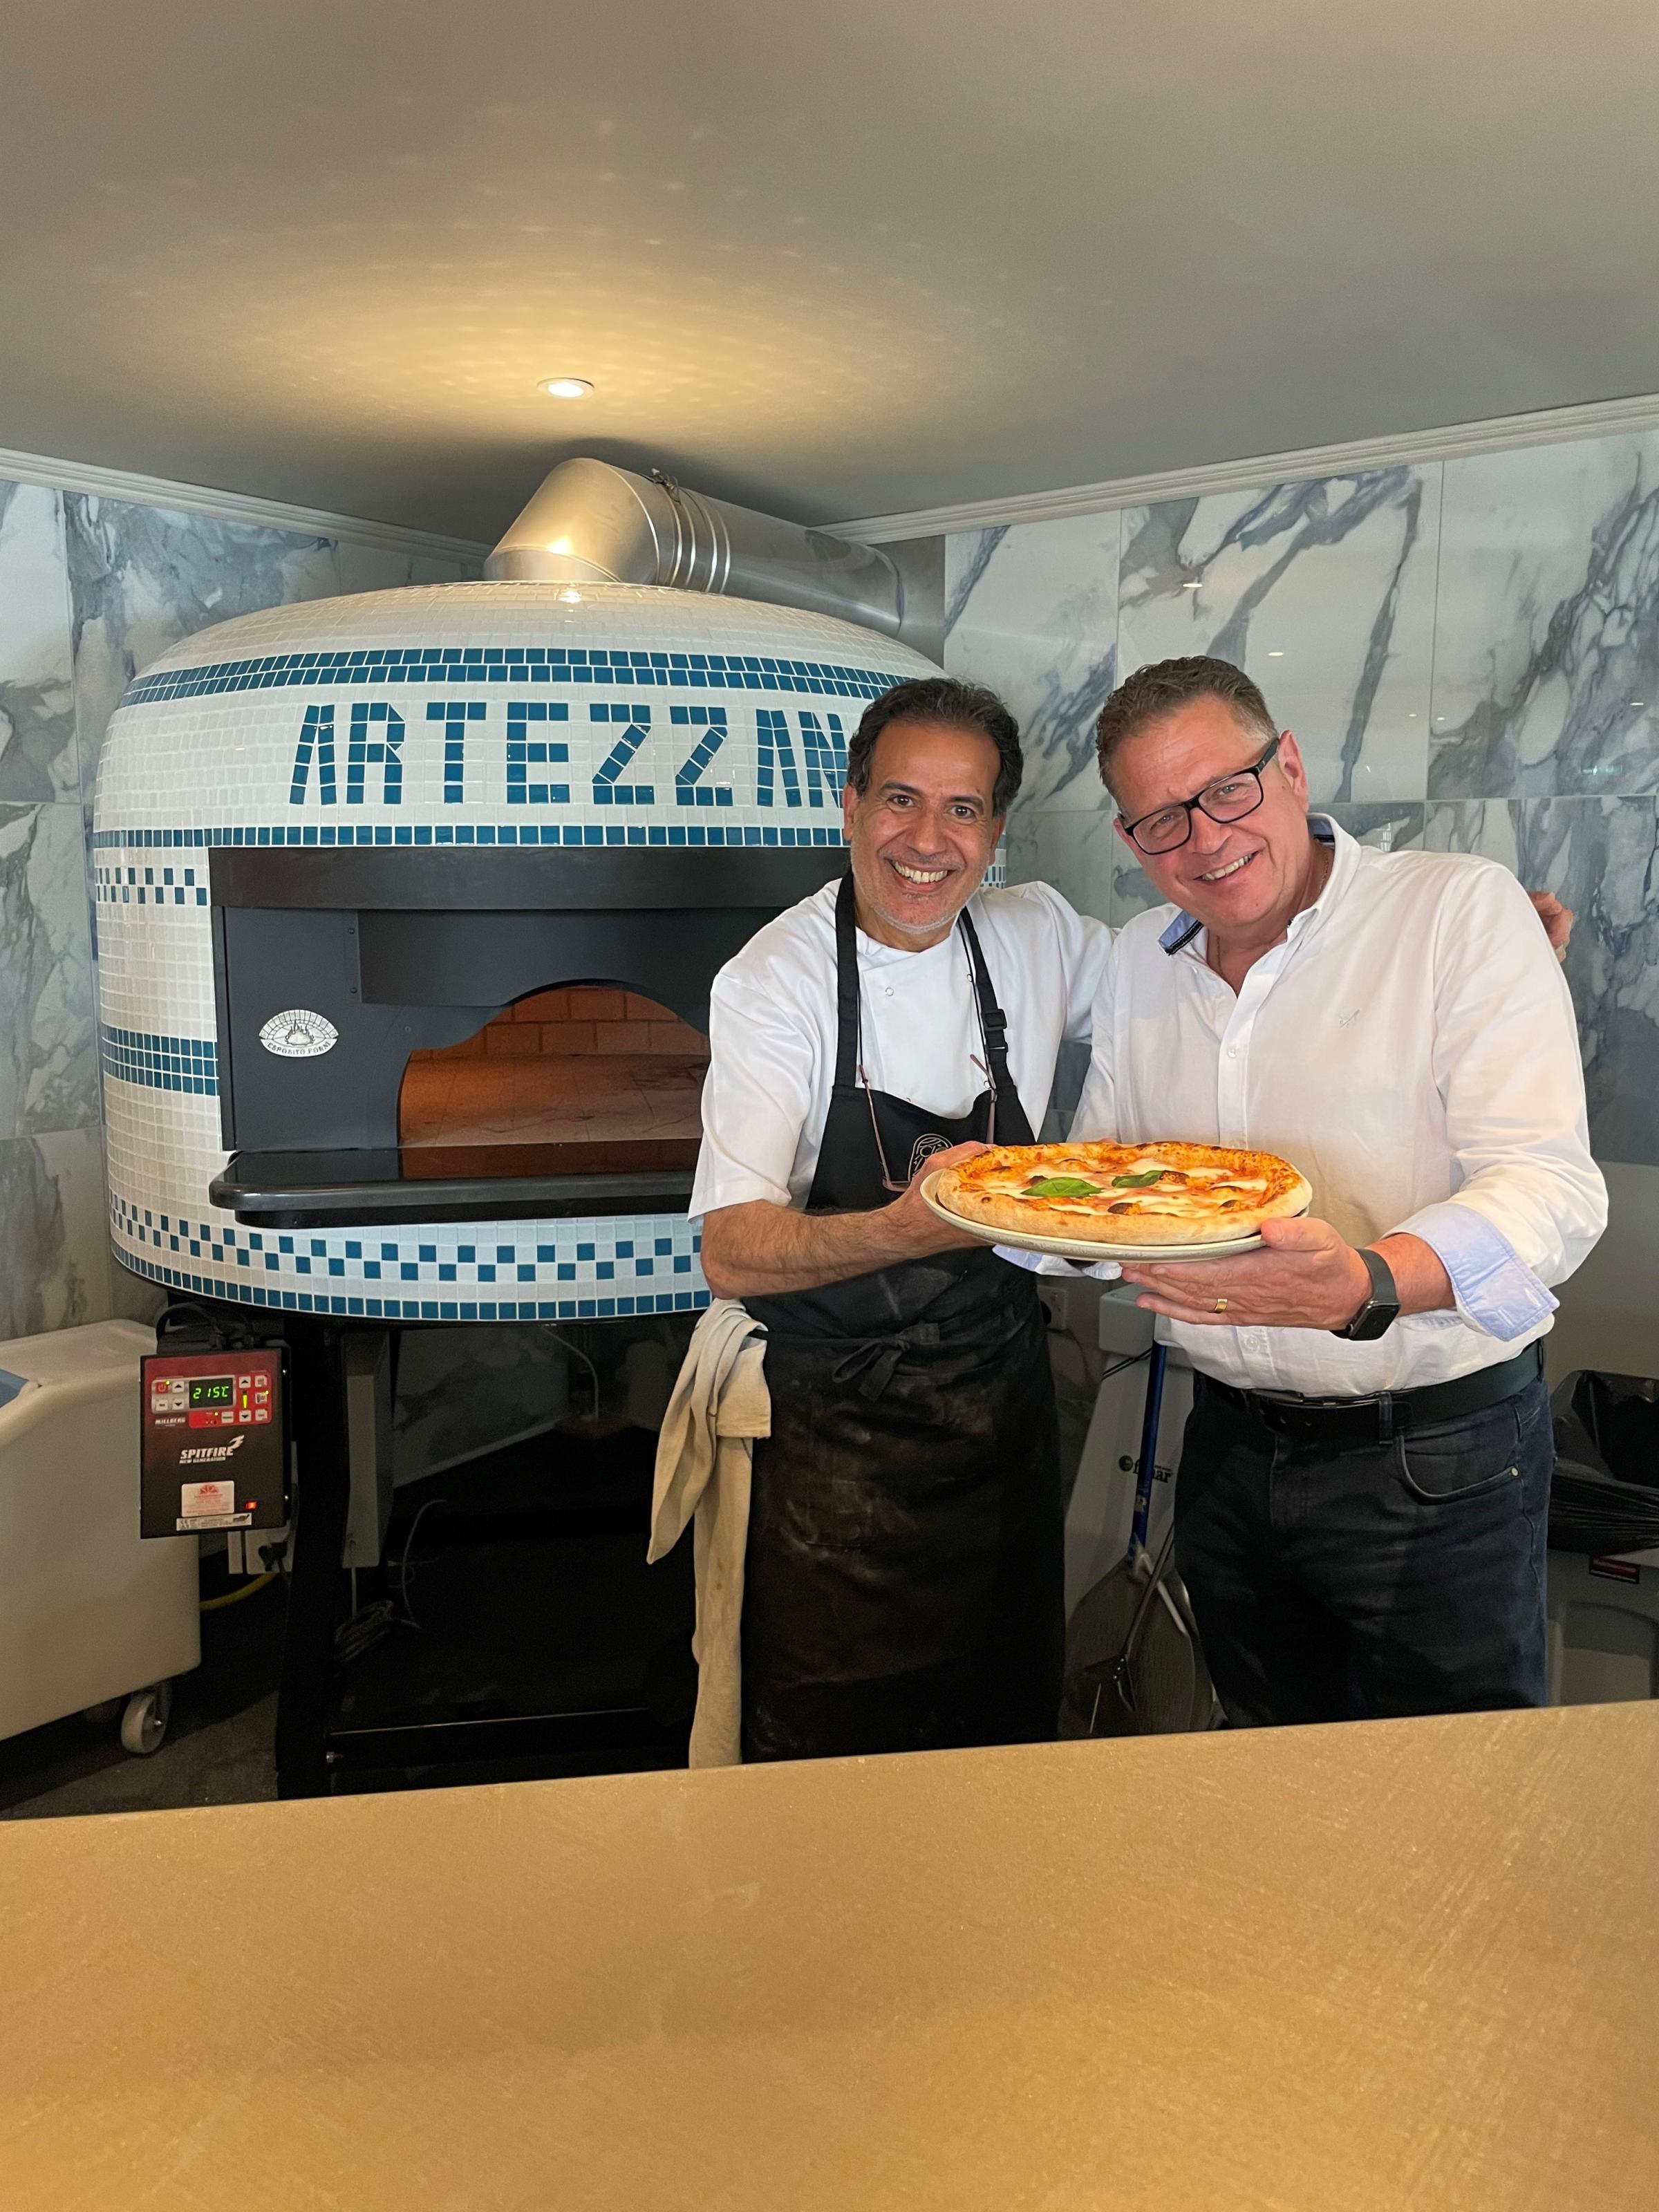 Artezzan - Pizza oven with chef and Jim Dorrington (right).